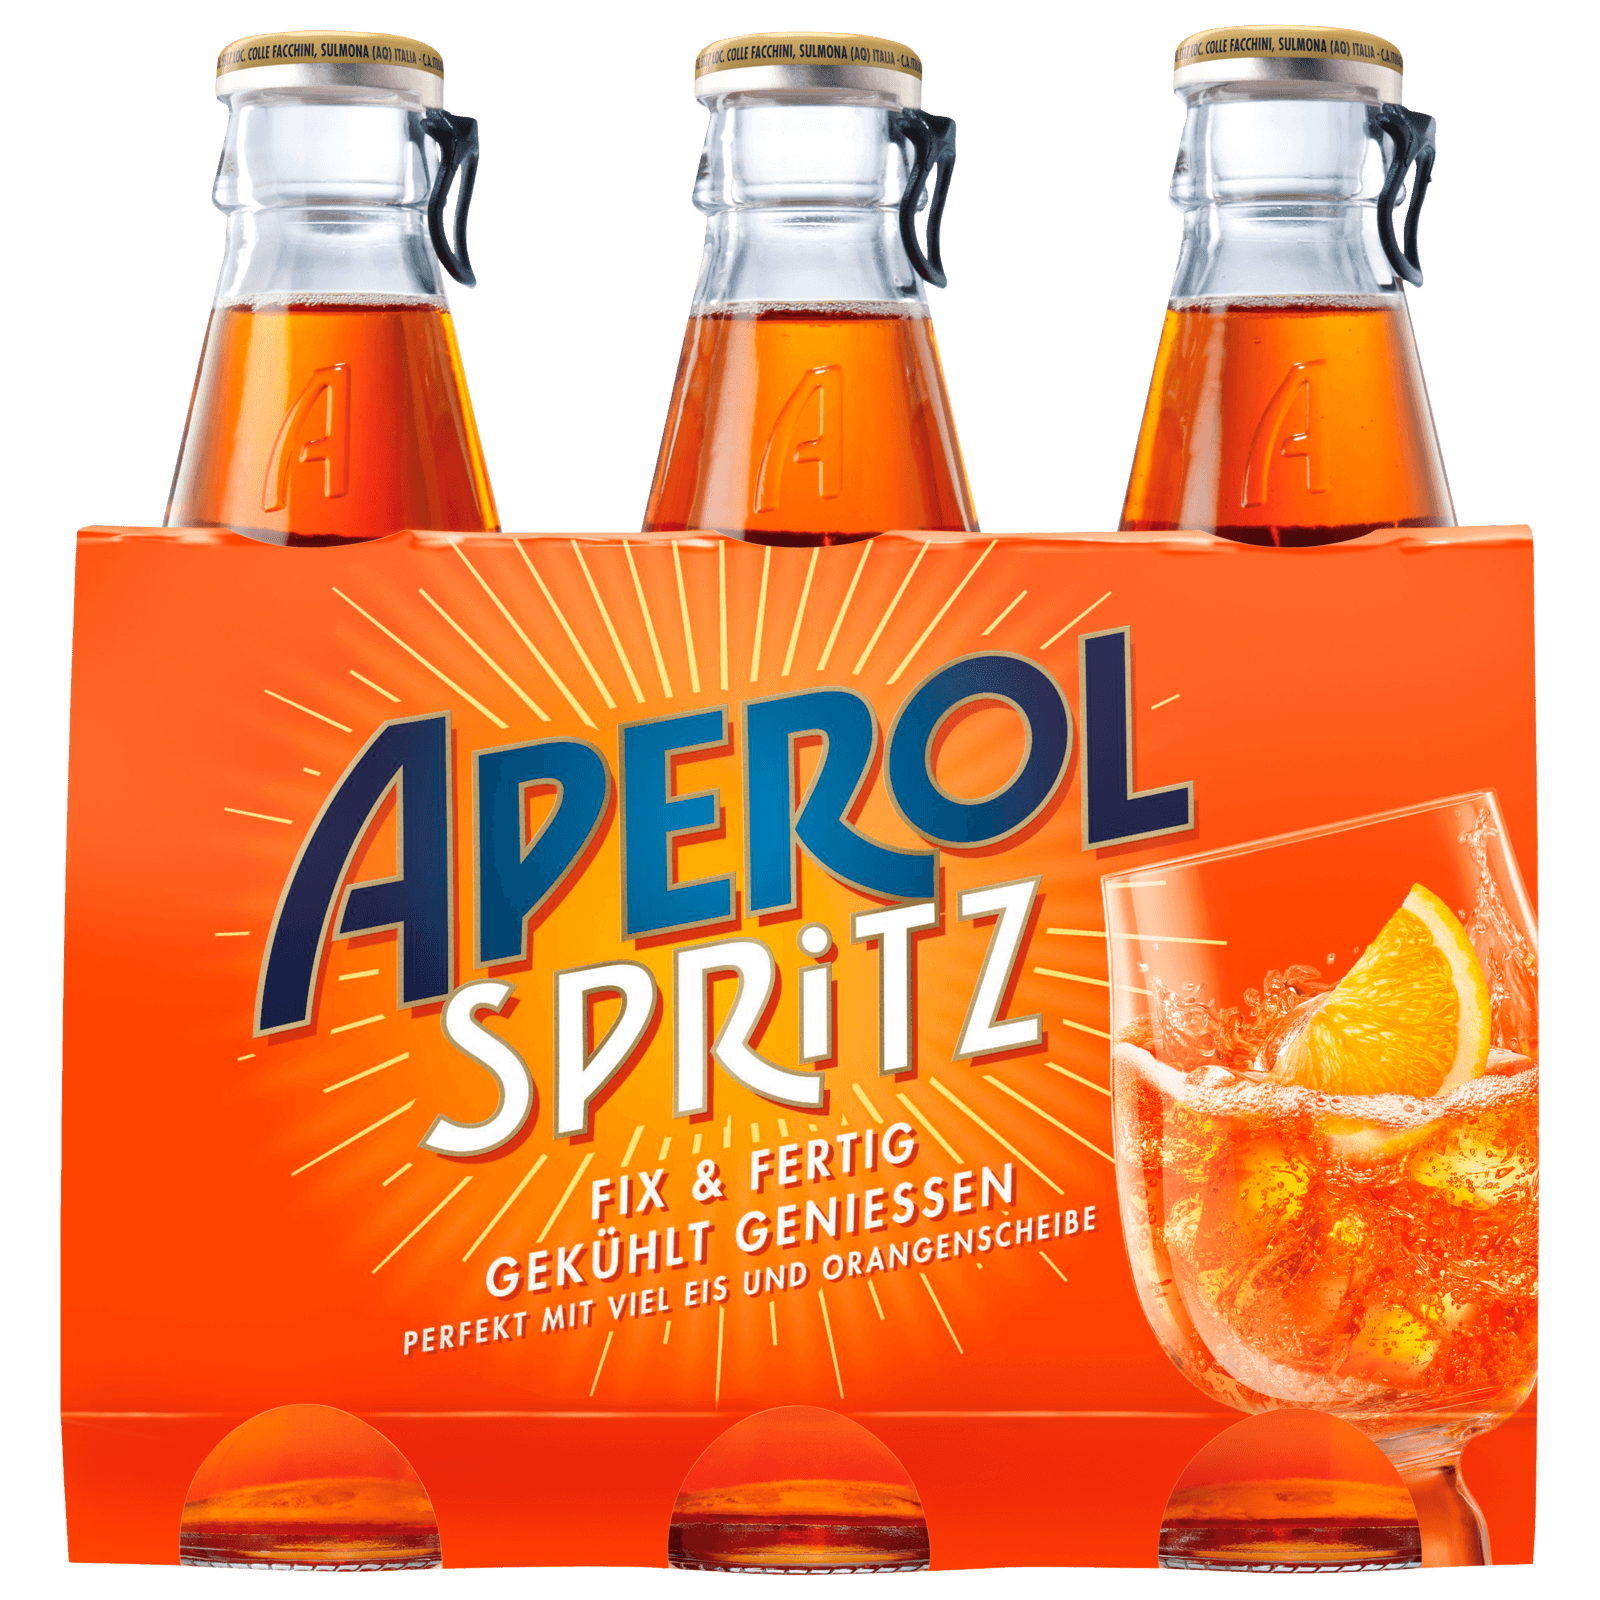 Aperol Spritz Perfekt gemixt 3x175ml bei REWE online bestellen! | Spirituosenpakete